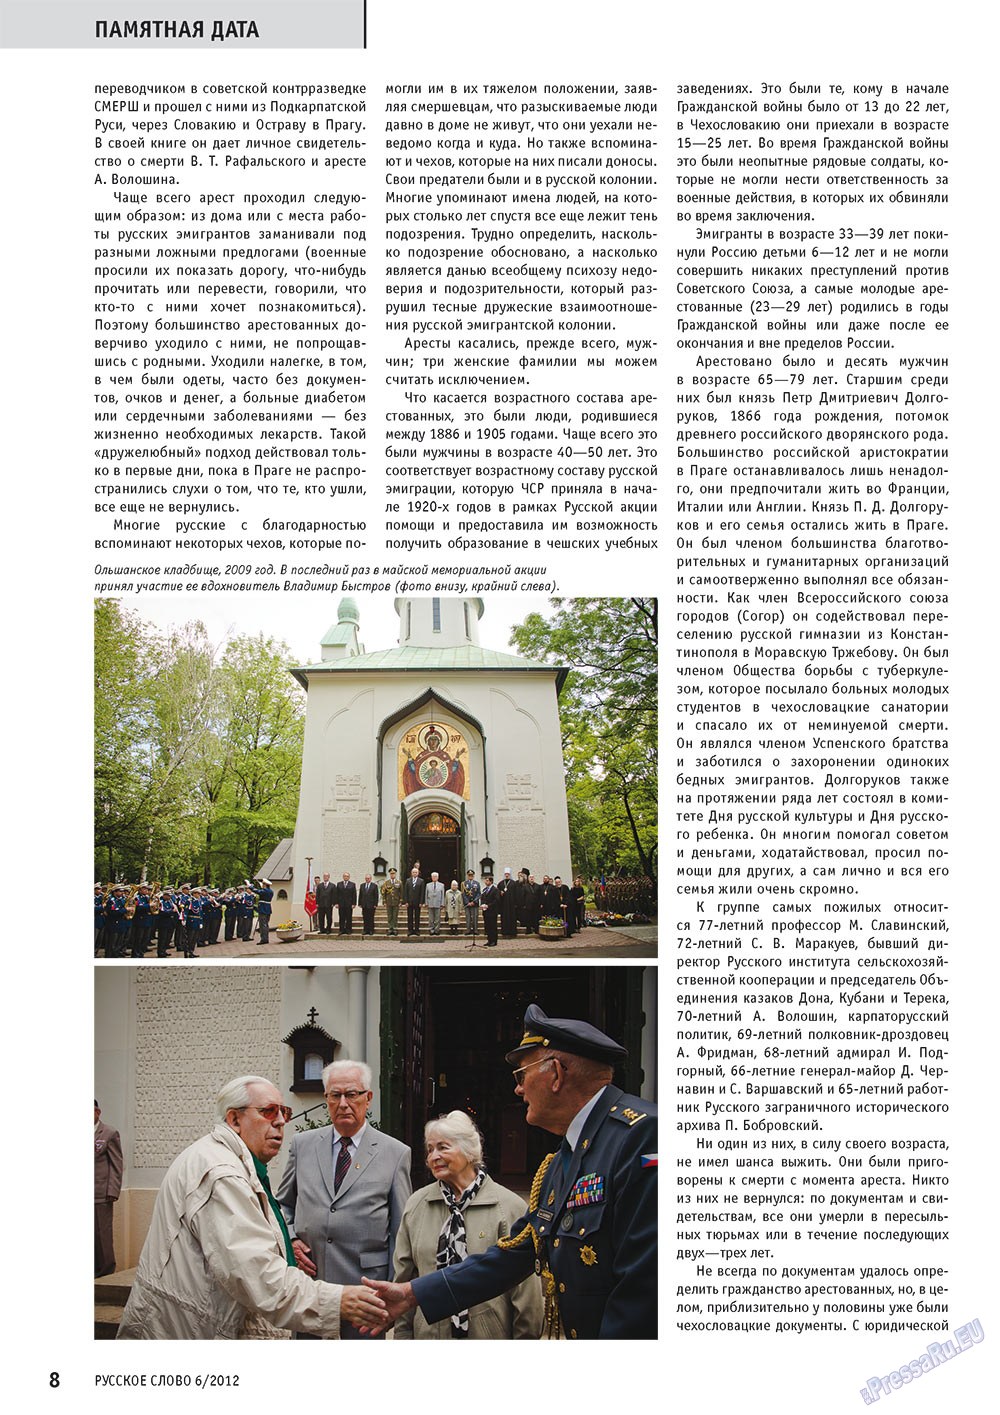 Русское слово, журнал. 2012 №6 стр.8